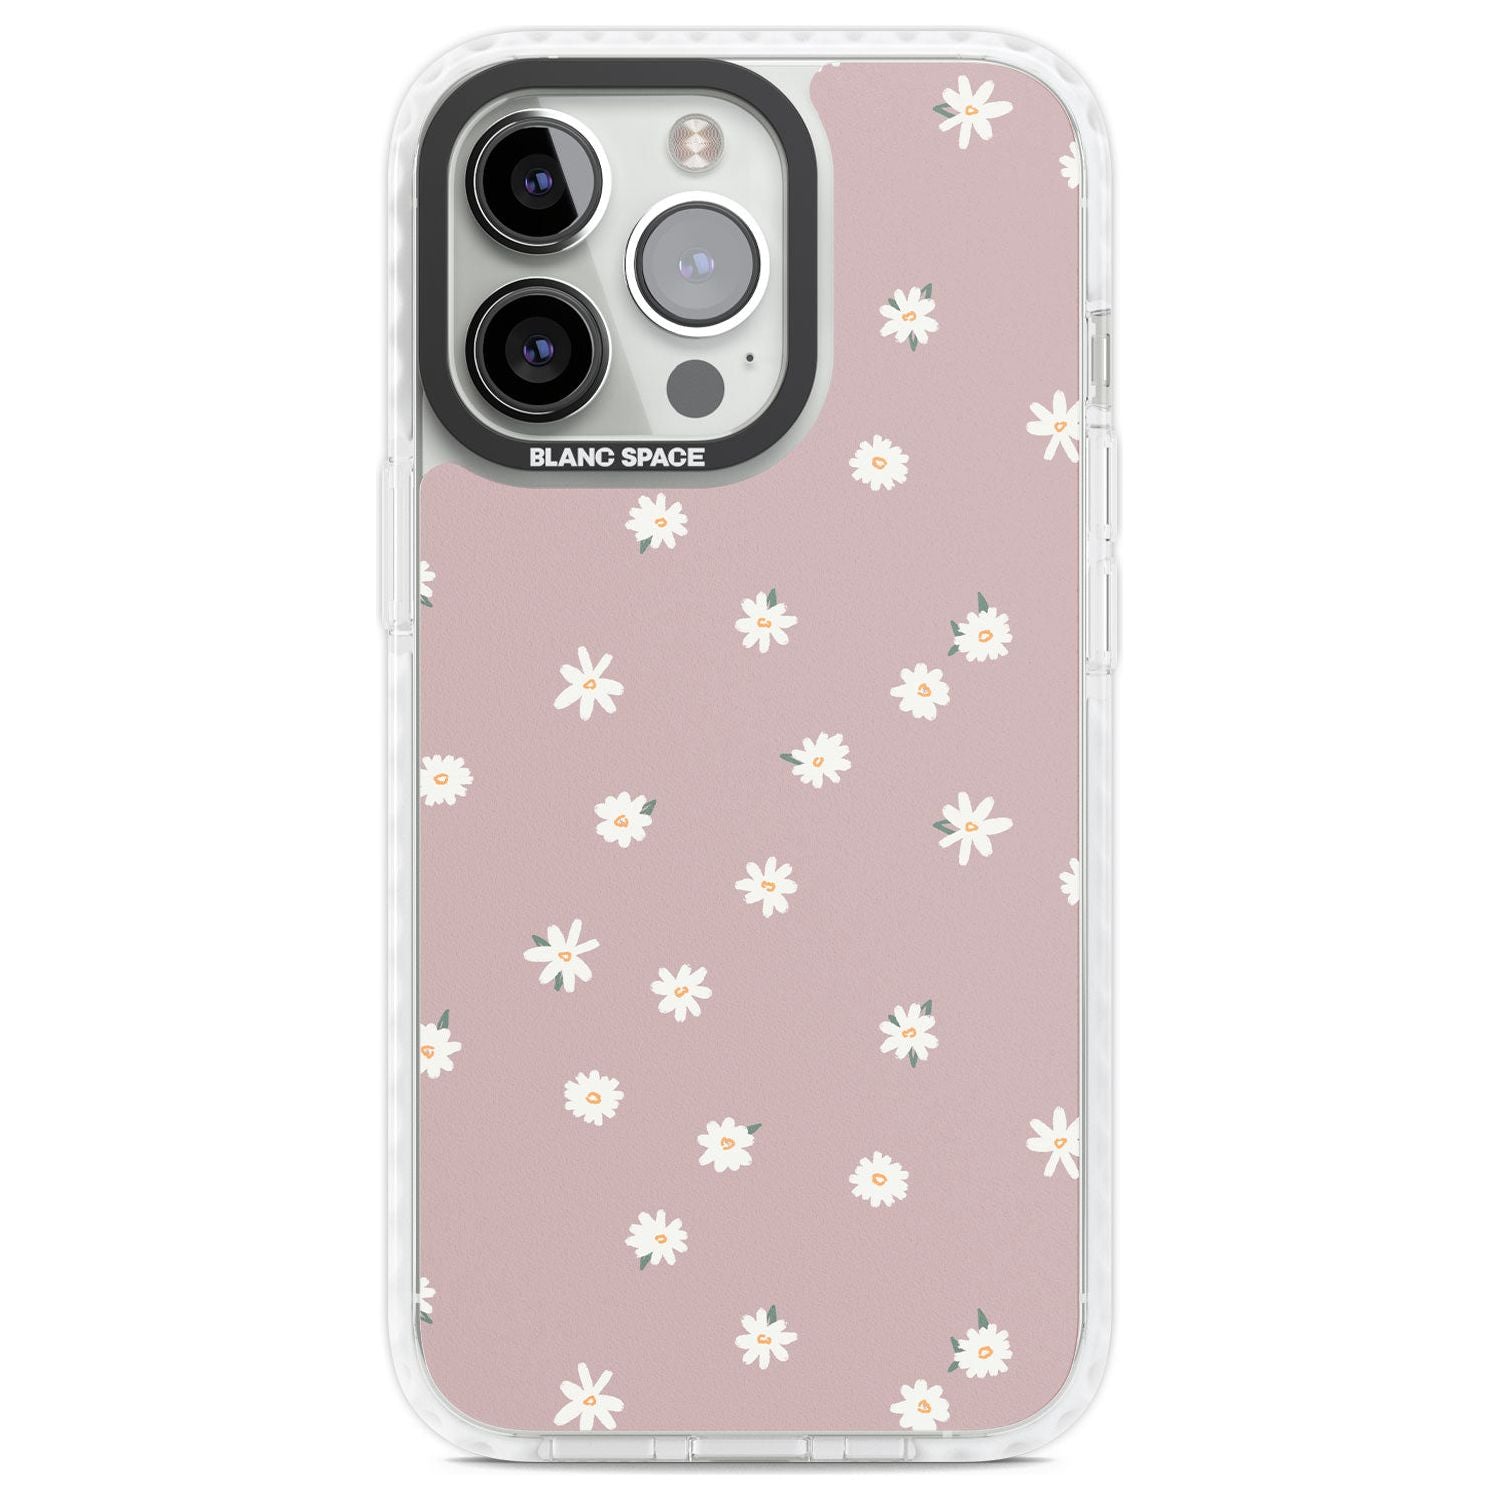 Dark Pink Cute Floral Design Phone Case iPhone 13 Pro / Impact Case,iPhone 14 Pro / Impact Case,iPhone 15 Pro Max / Impact Case,iPhone 15 Pro / Impact Case Blanc Space